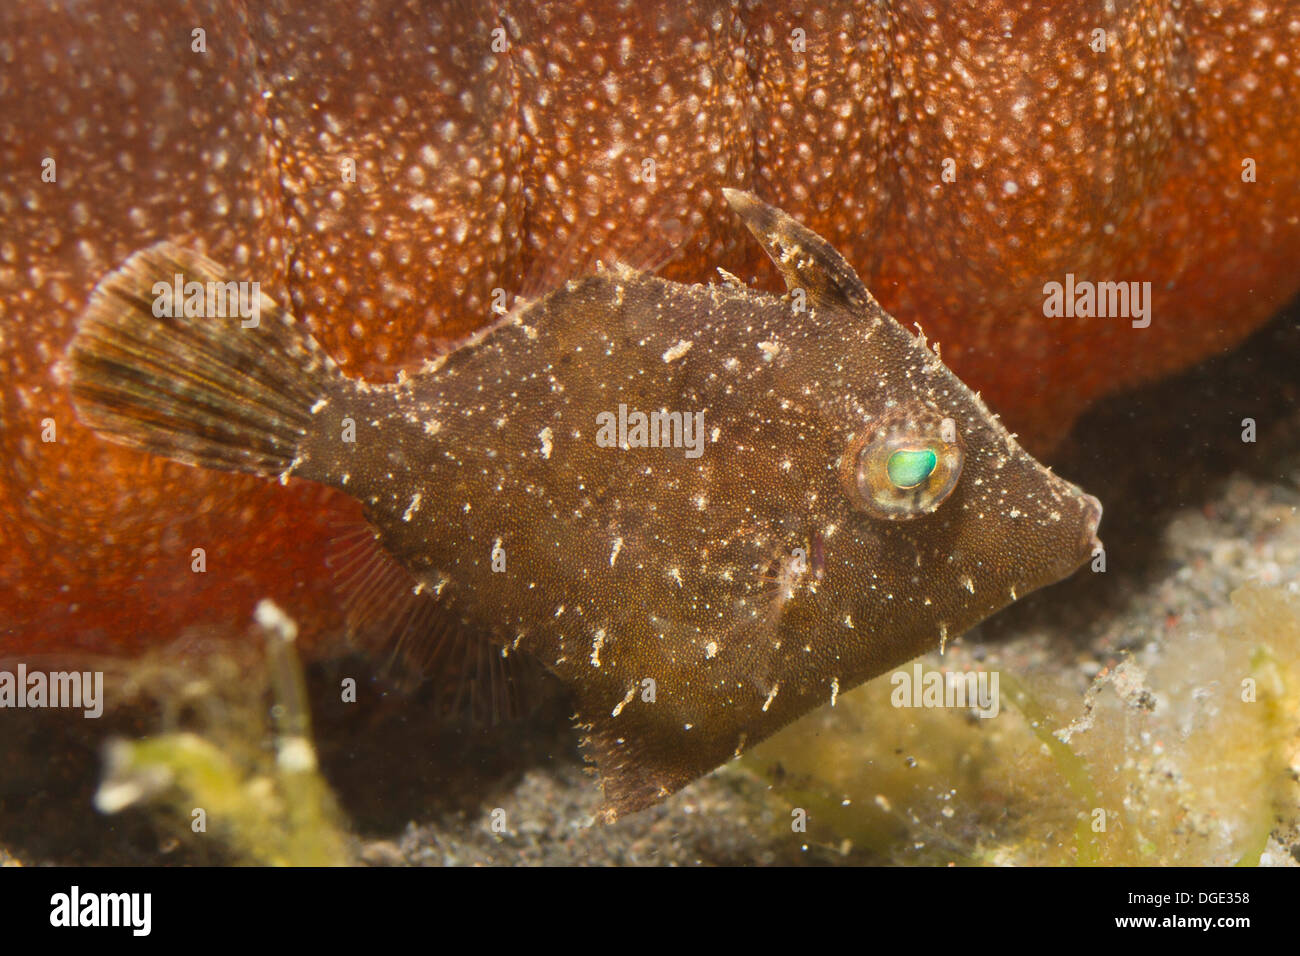 Petites balistes juvéniles tente d'h par ide en supposant que la coloration et natation près d'un concombre de mer.(Acreichthys sp.) Banque D'Images